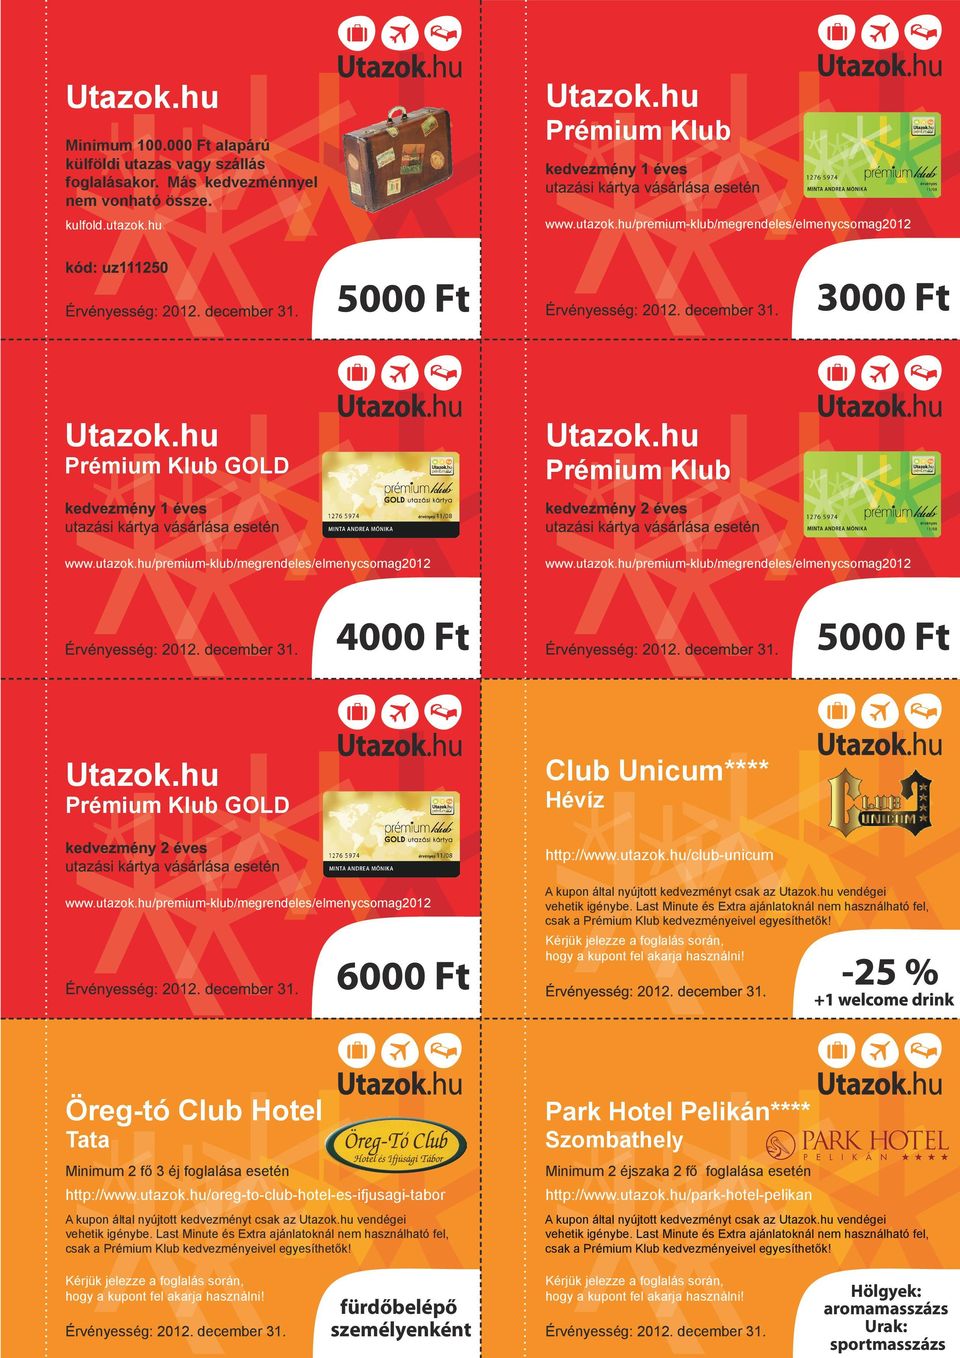 hu/club-unicum Öreg-tó Club Hotel Tata Minimum 2 fő 3 éj foglalása esetén http://www.utazok.